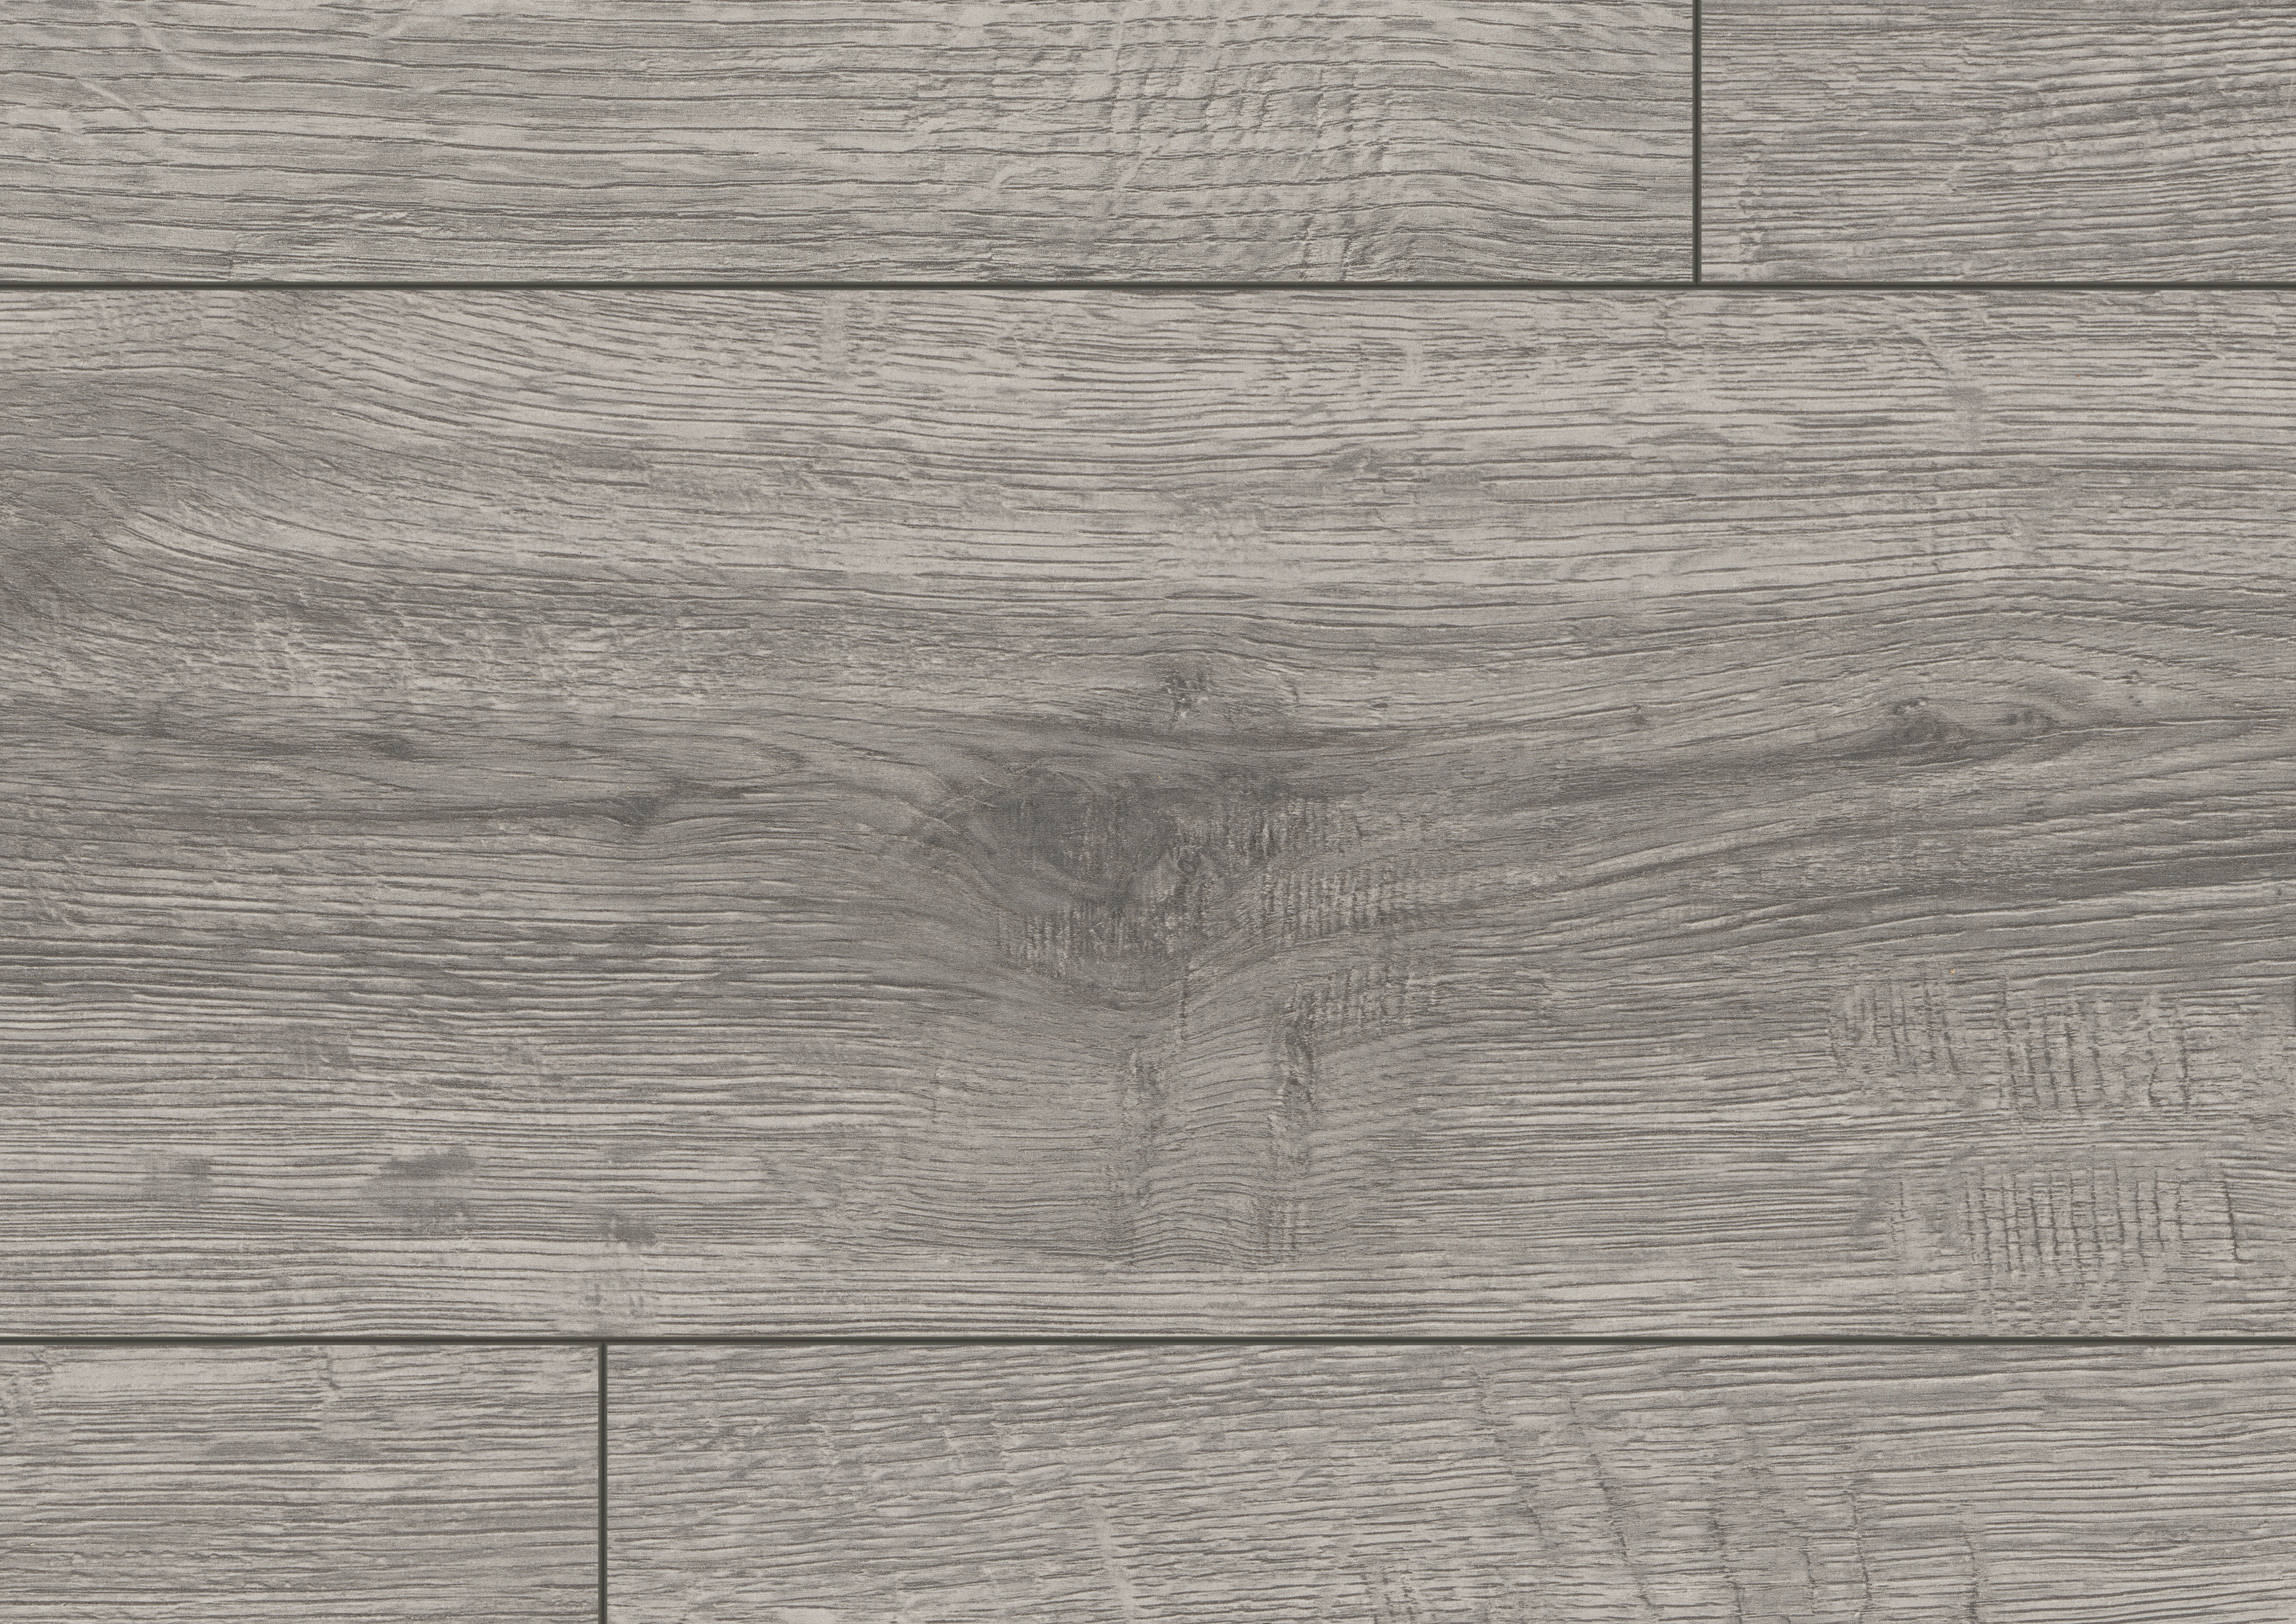 EPL205 Roble Sherman gris claro – Revestimientos de piso laminado EGGER